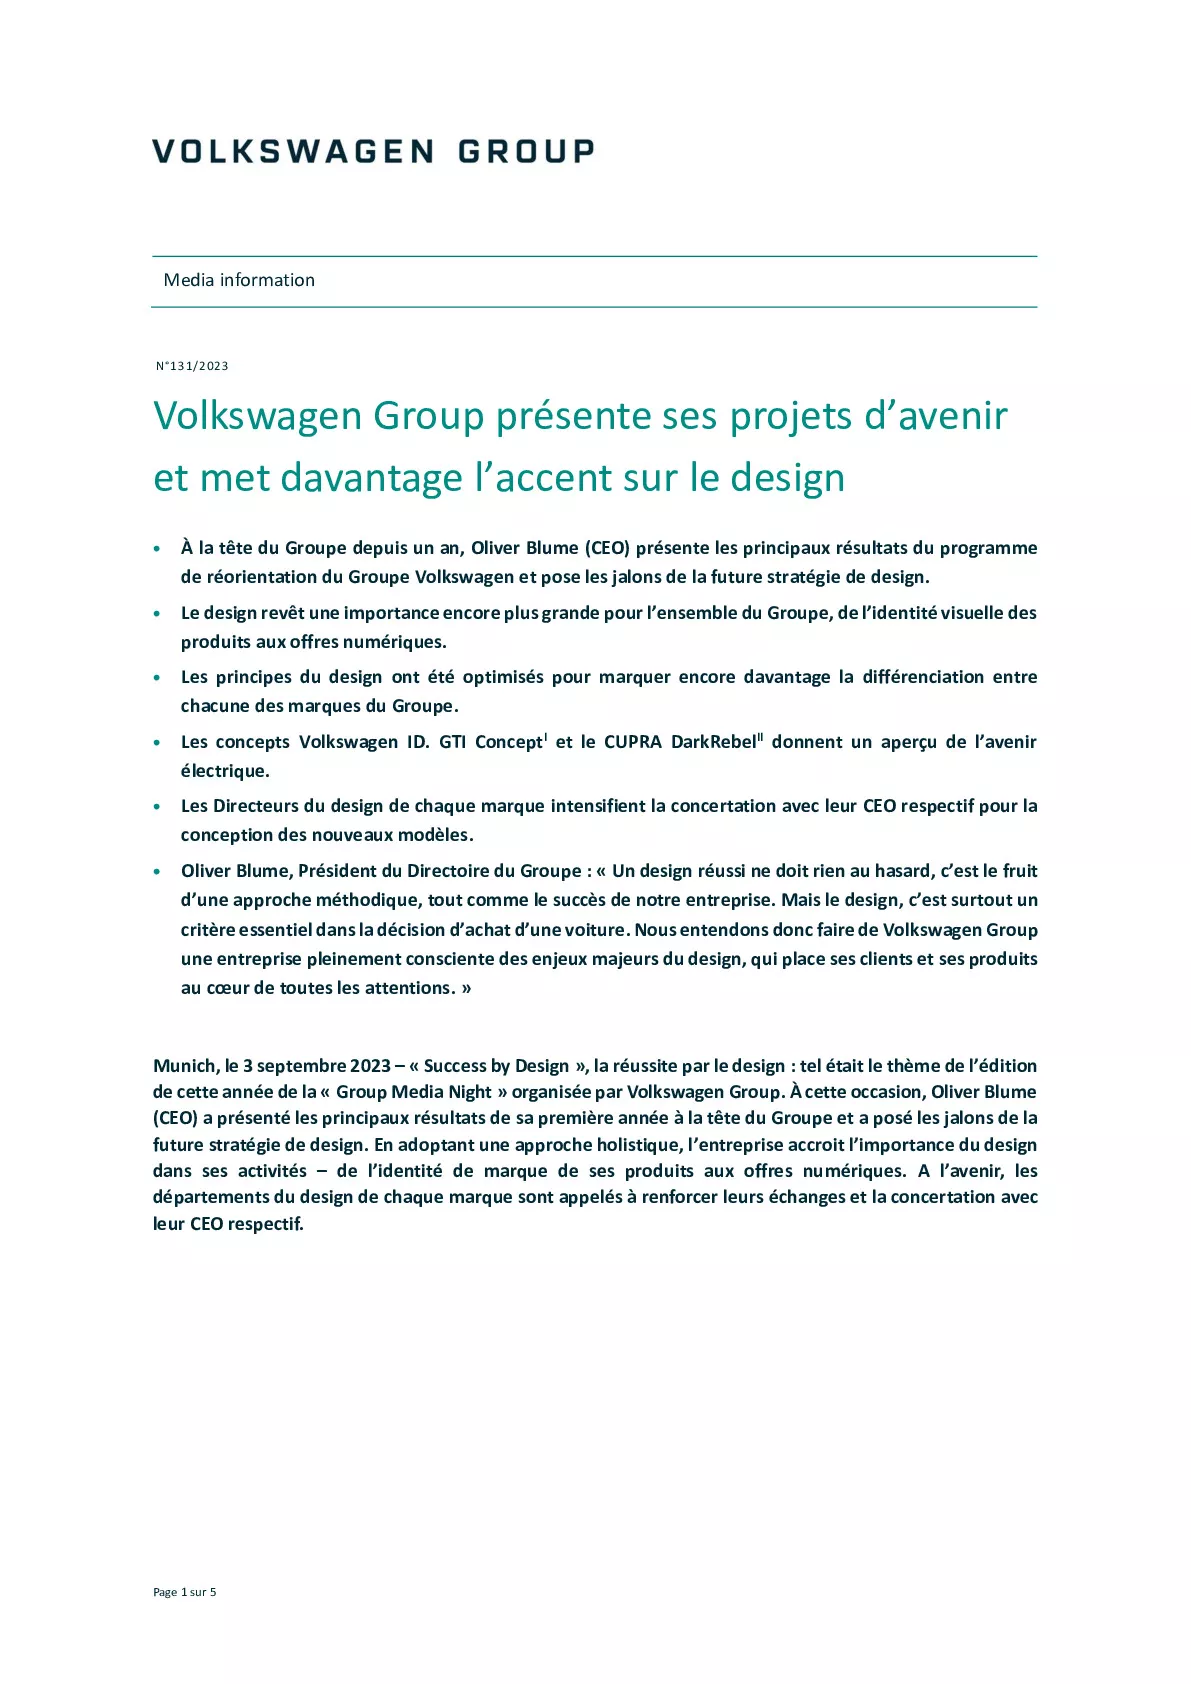 Communiqué de presse - Volkswagen Group présente ses projets davenir et met davantage laccent sur le design-pdf